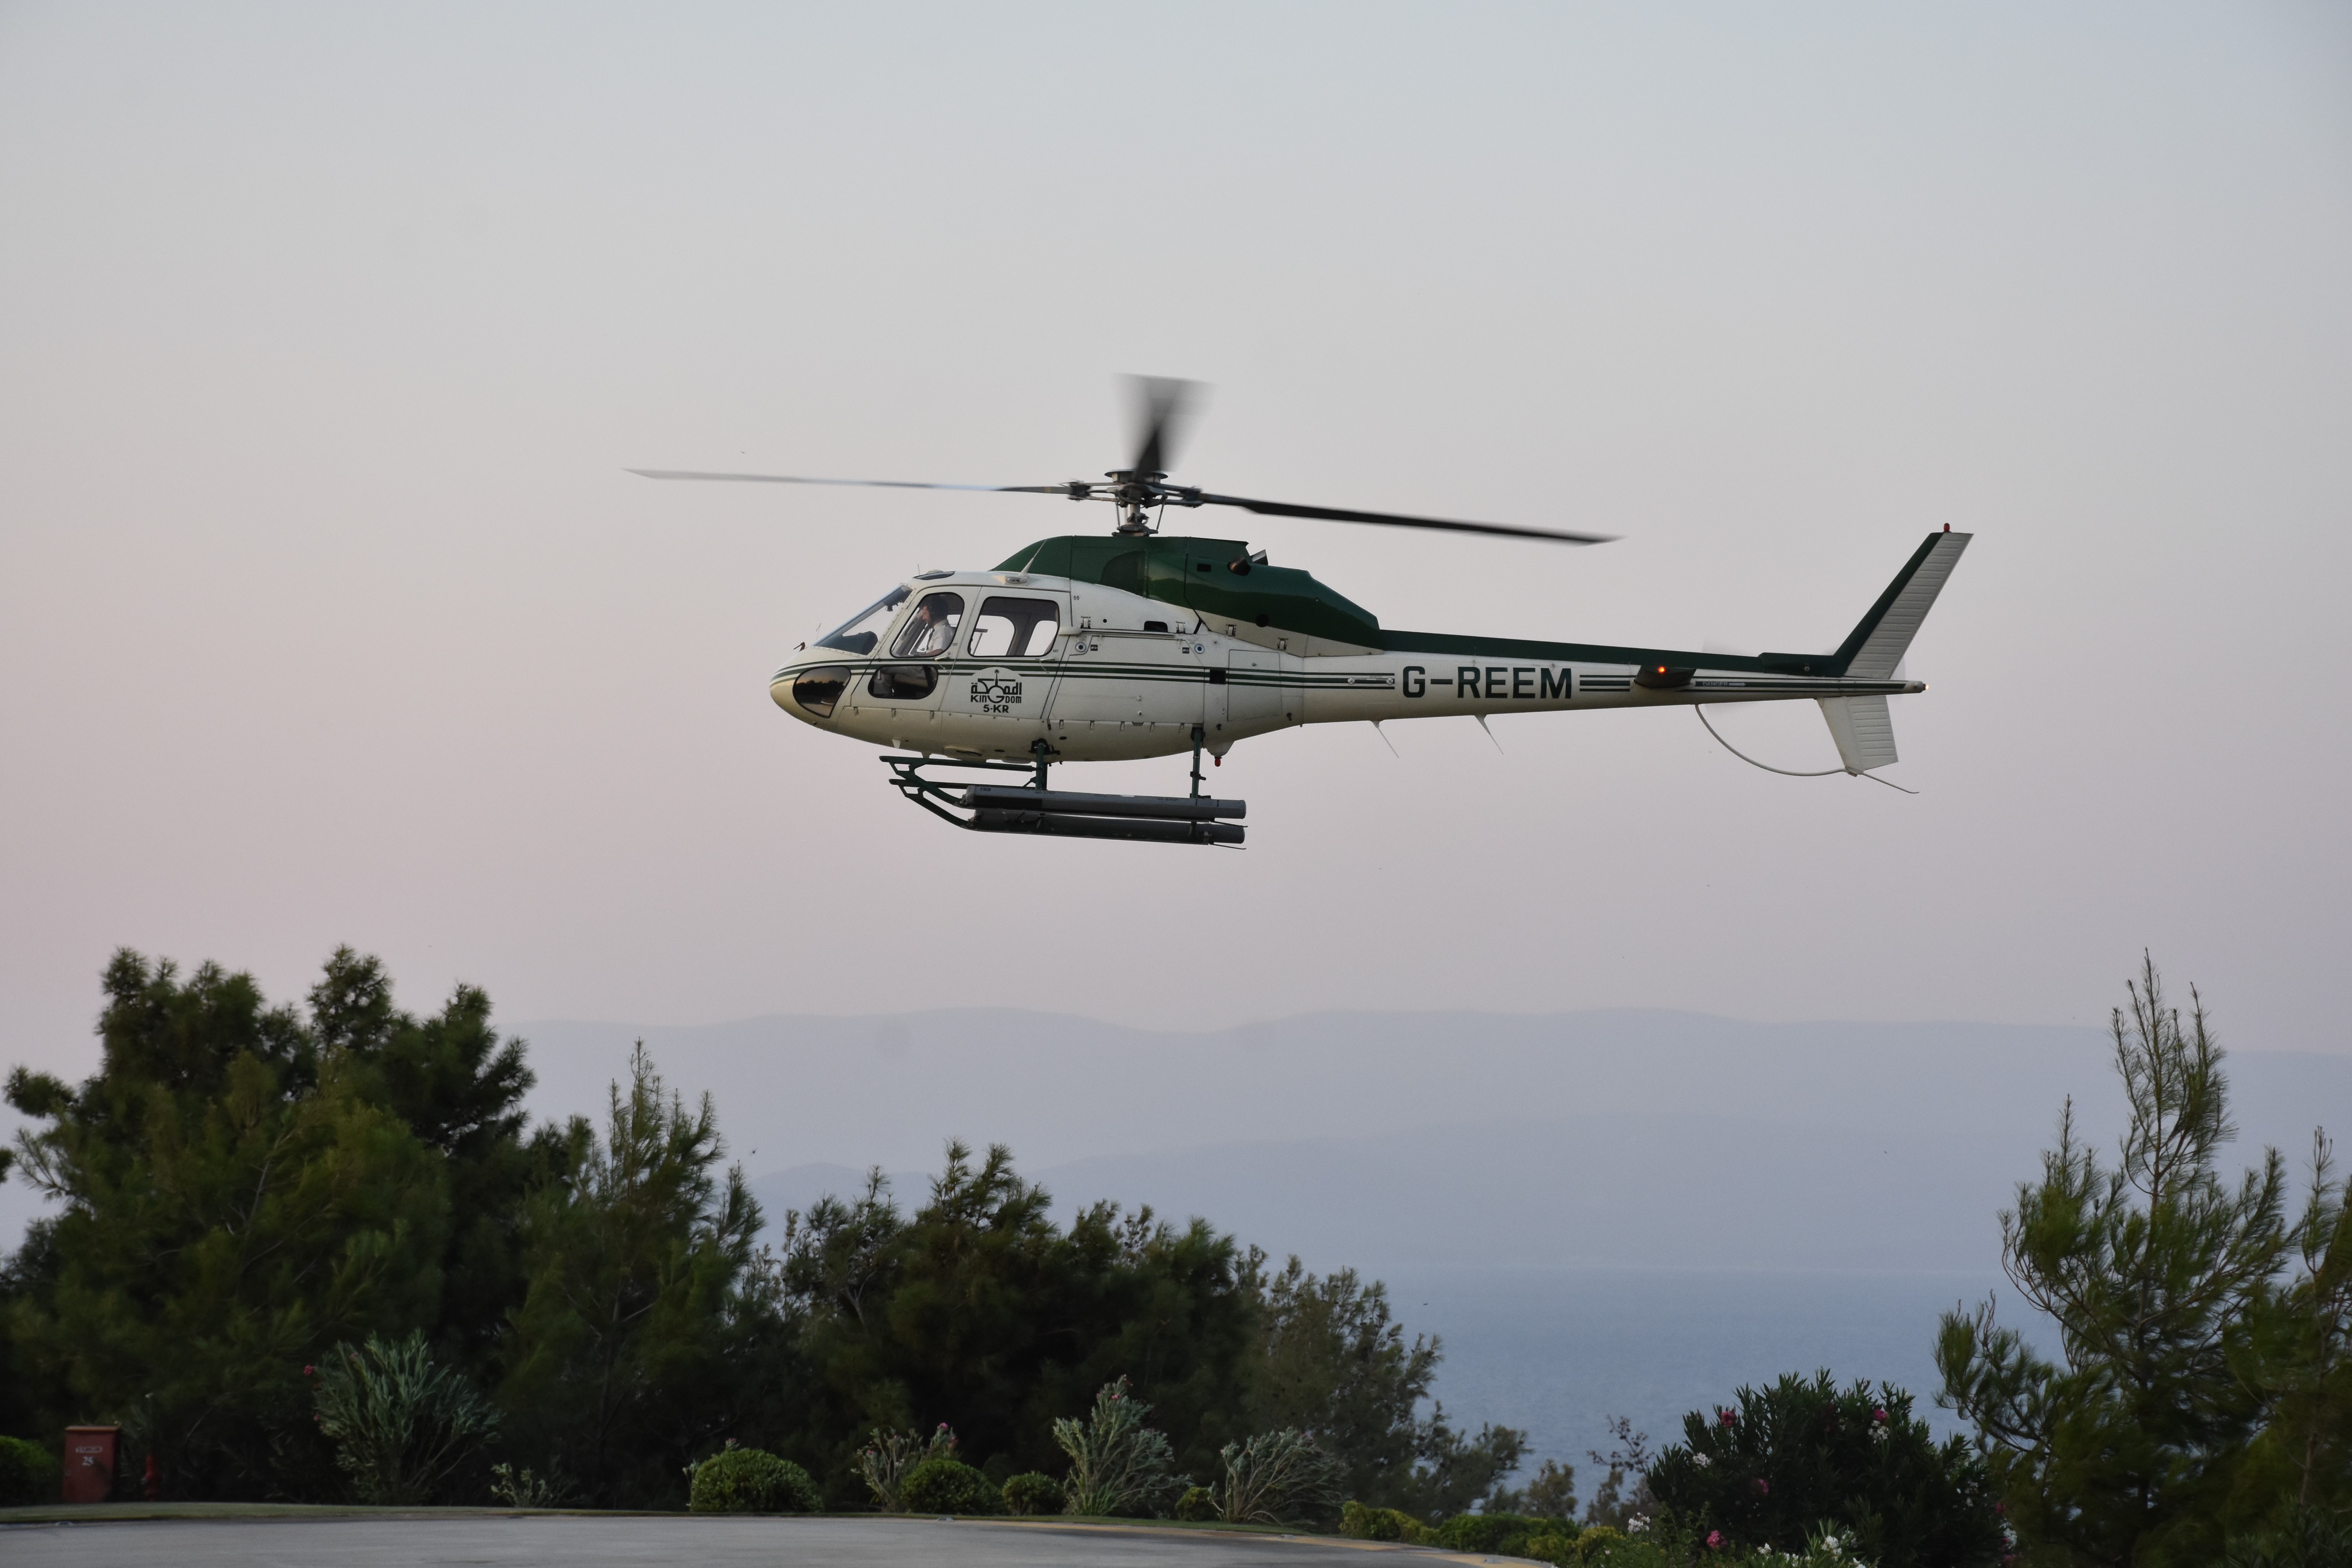 Lezuhant az egyik szaúdi herceg helikoptere